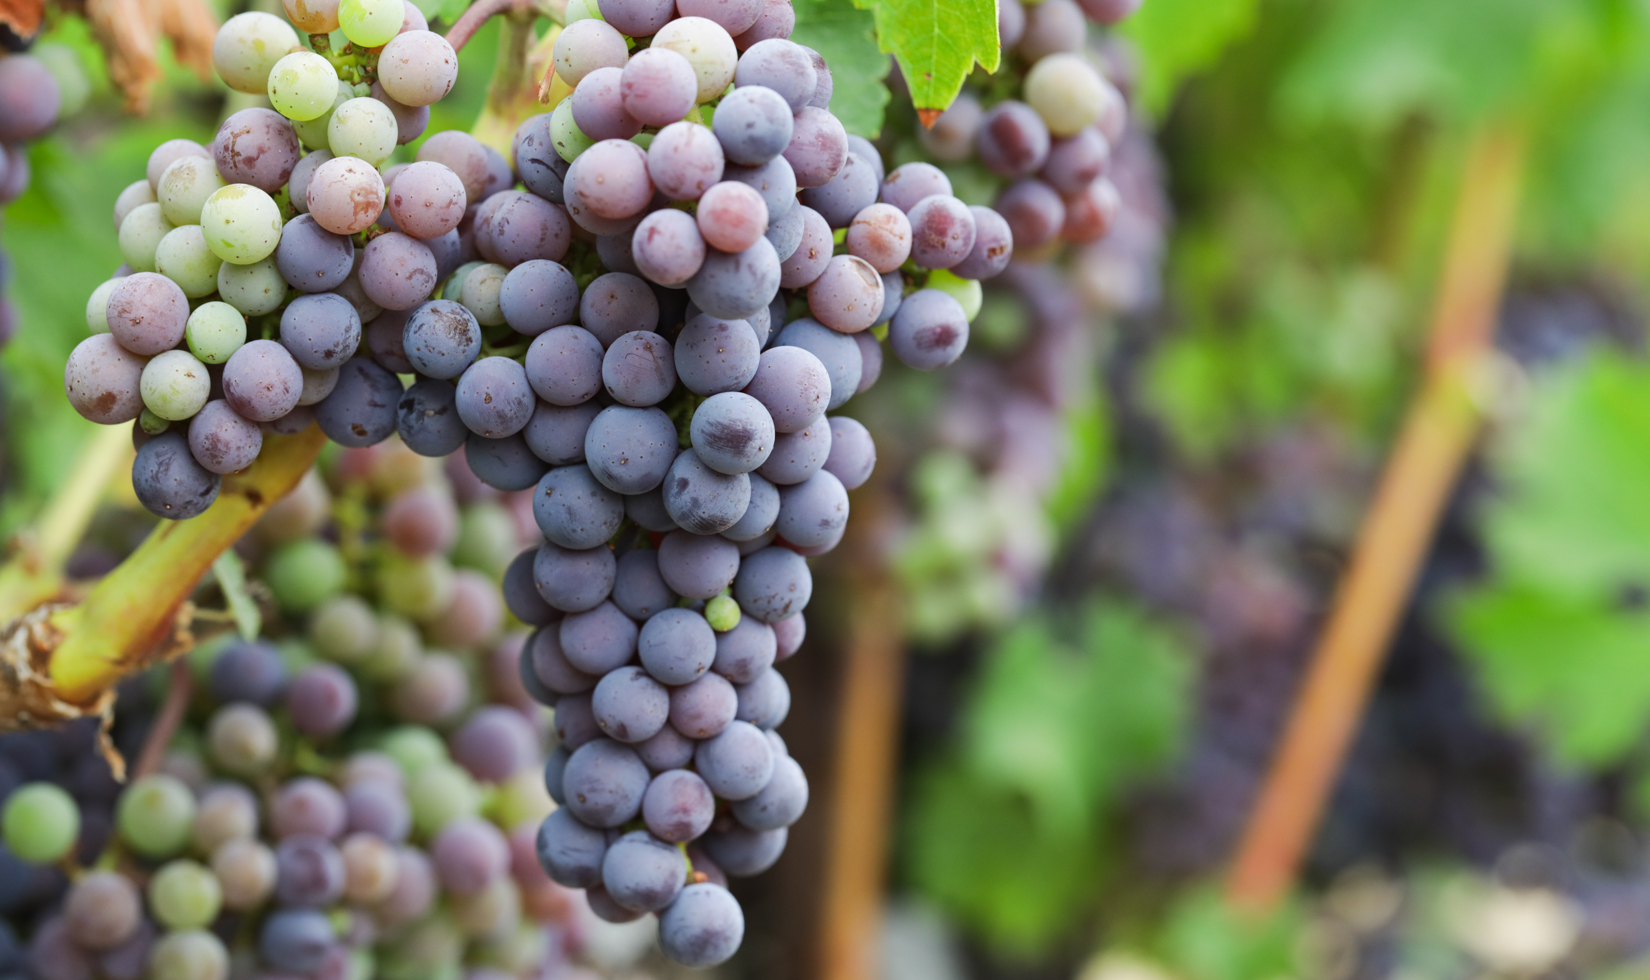 Cabernet Sauvignon grape clusters on vine